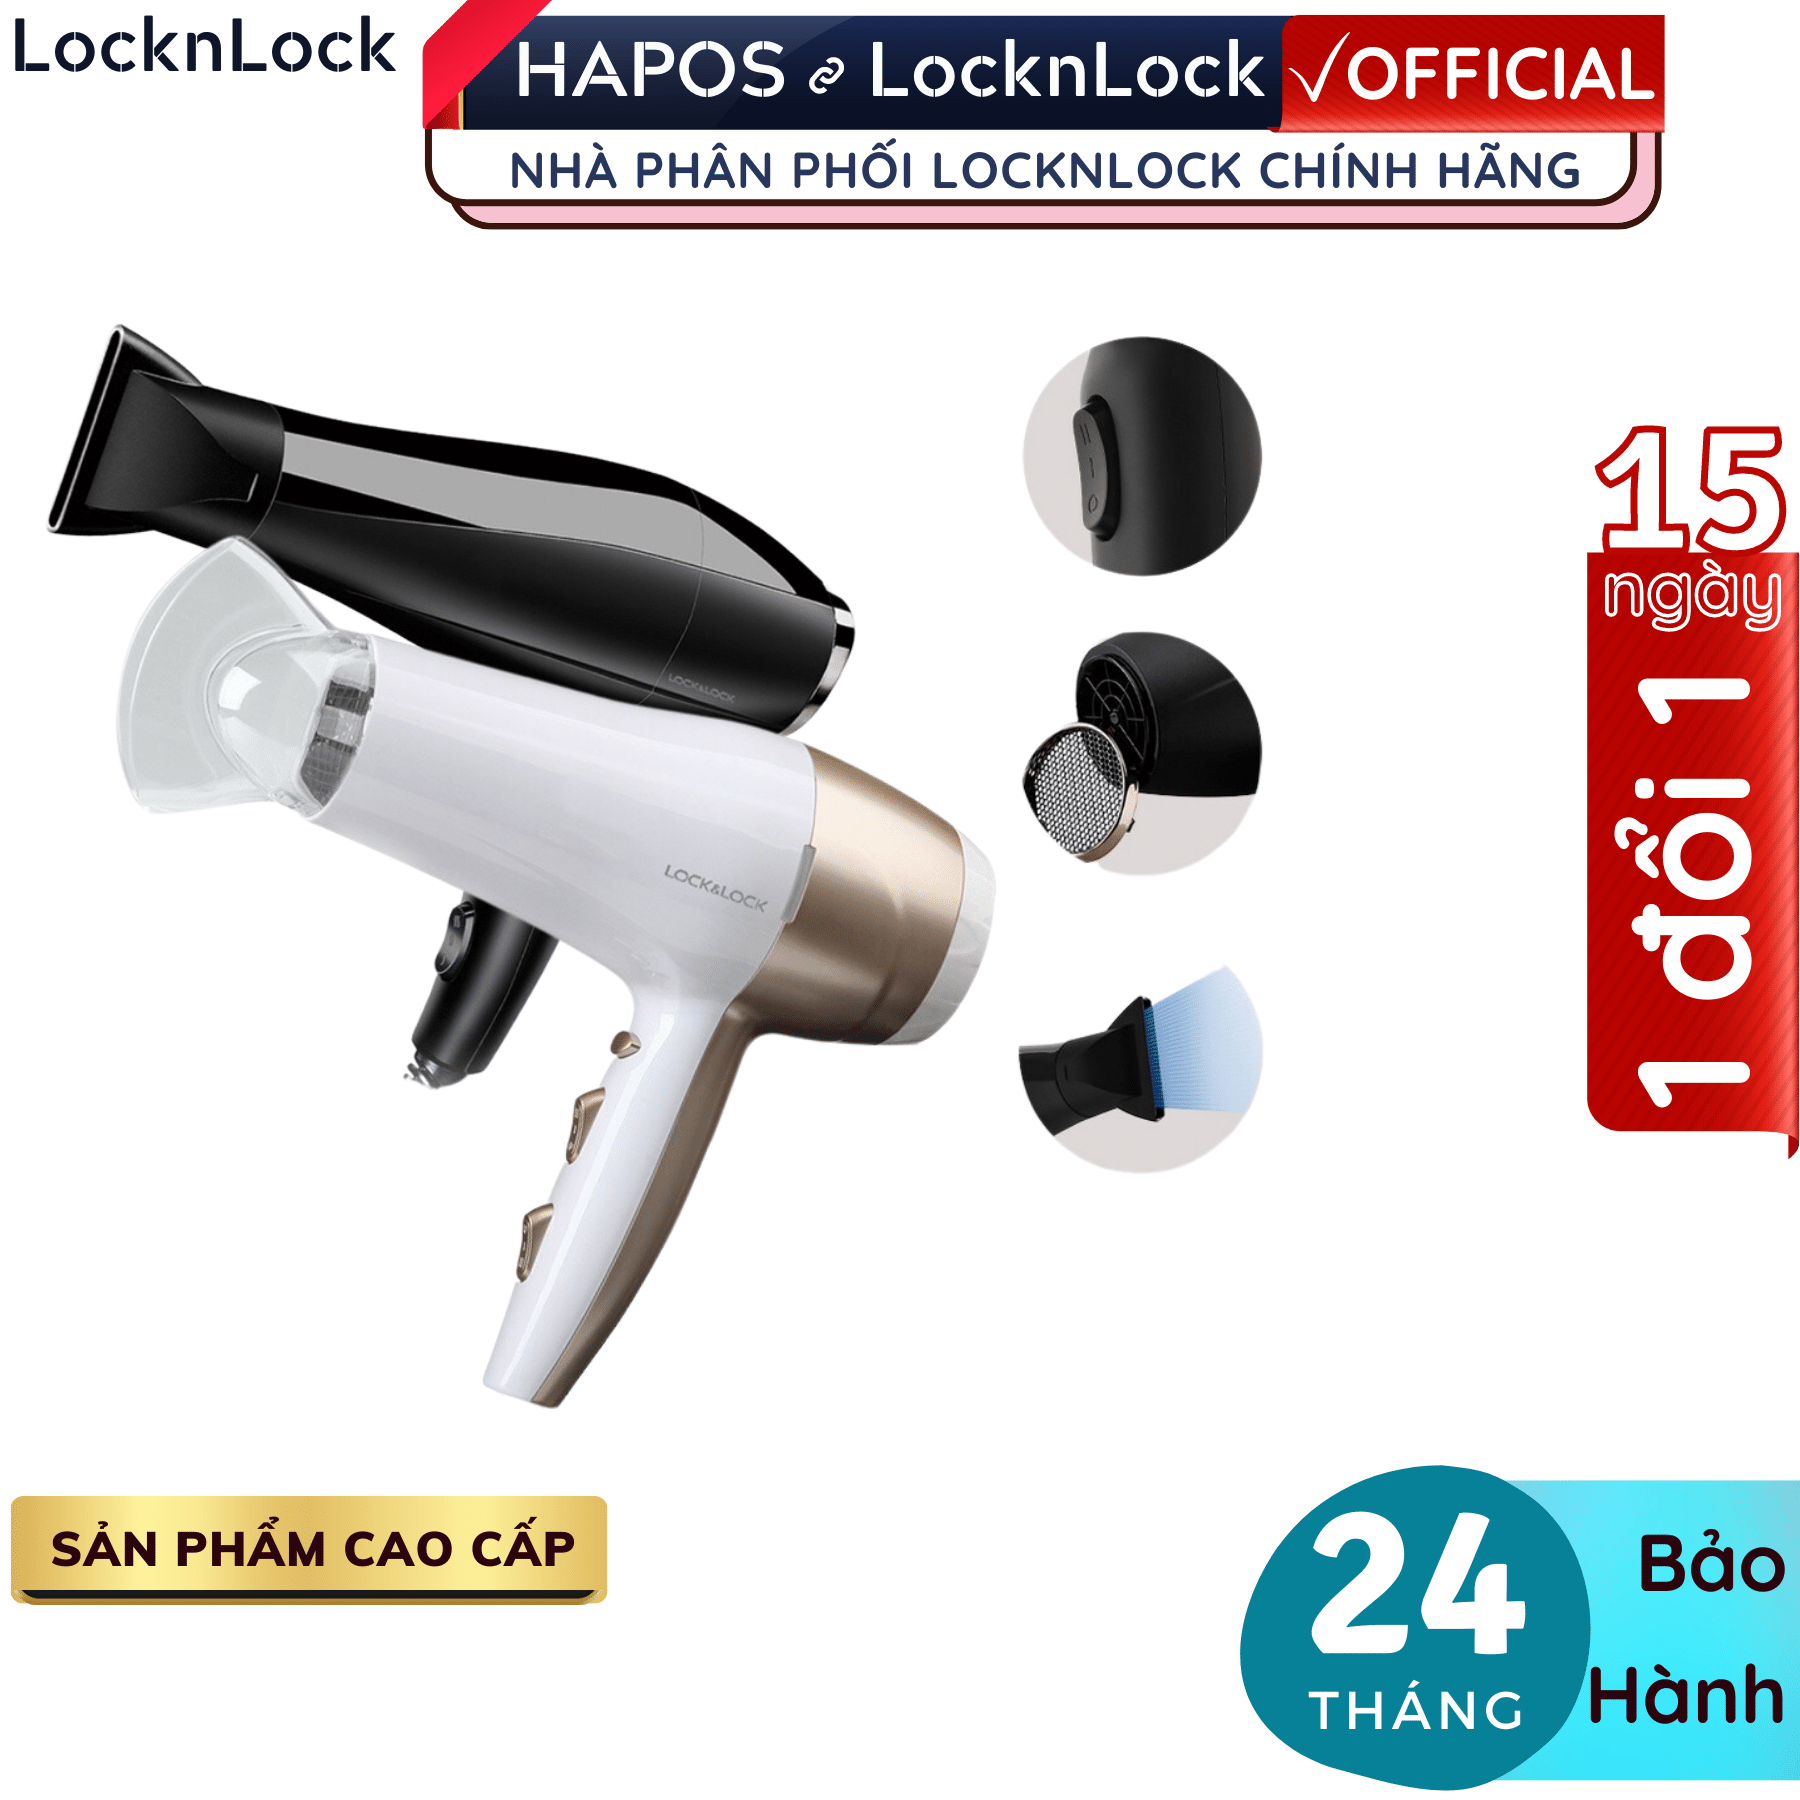 Máy sấy tóc Lock&amp;Lock ENA146BLK 2000W - Hàng chính hãng, chế độ nóng lạnh, kèm đầu dẹp tạo kiểu, công suất lớn - Hapos